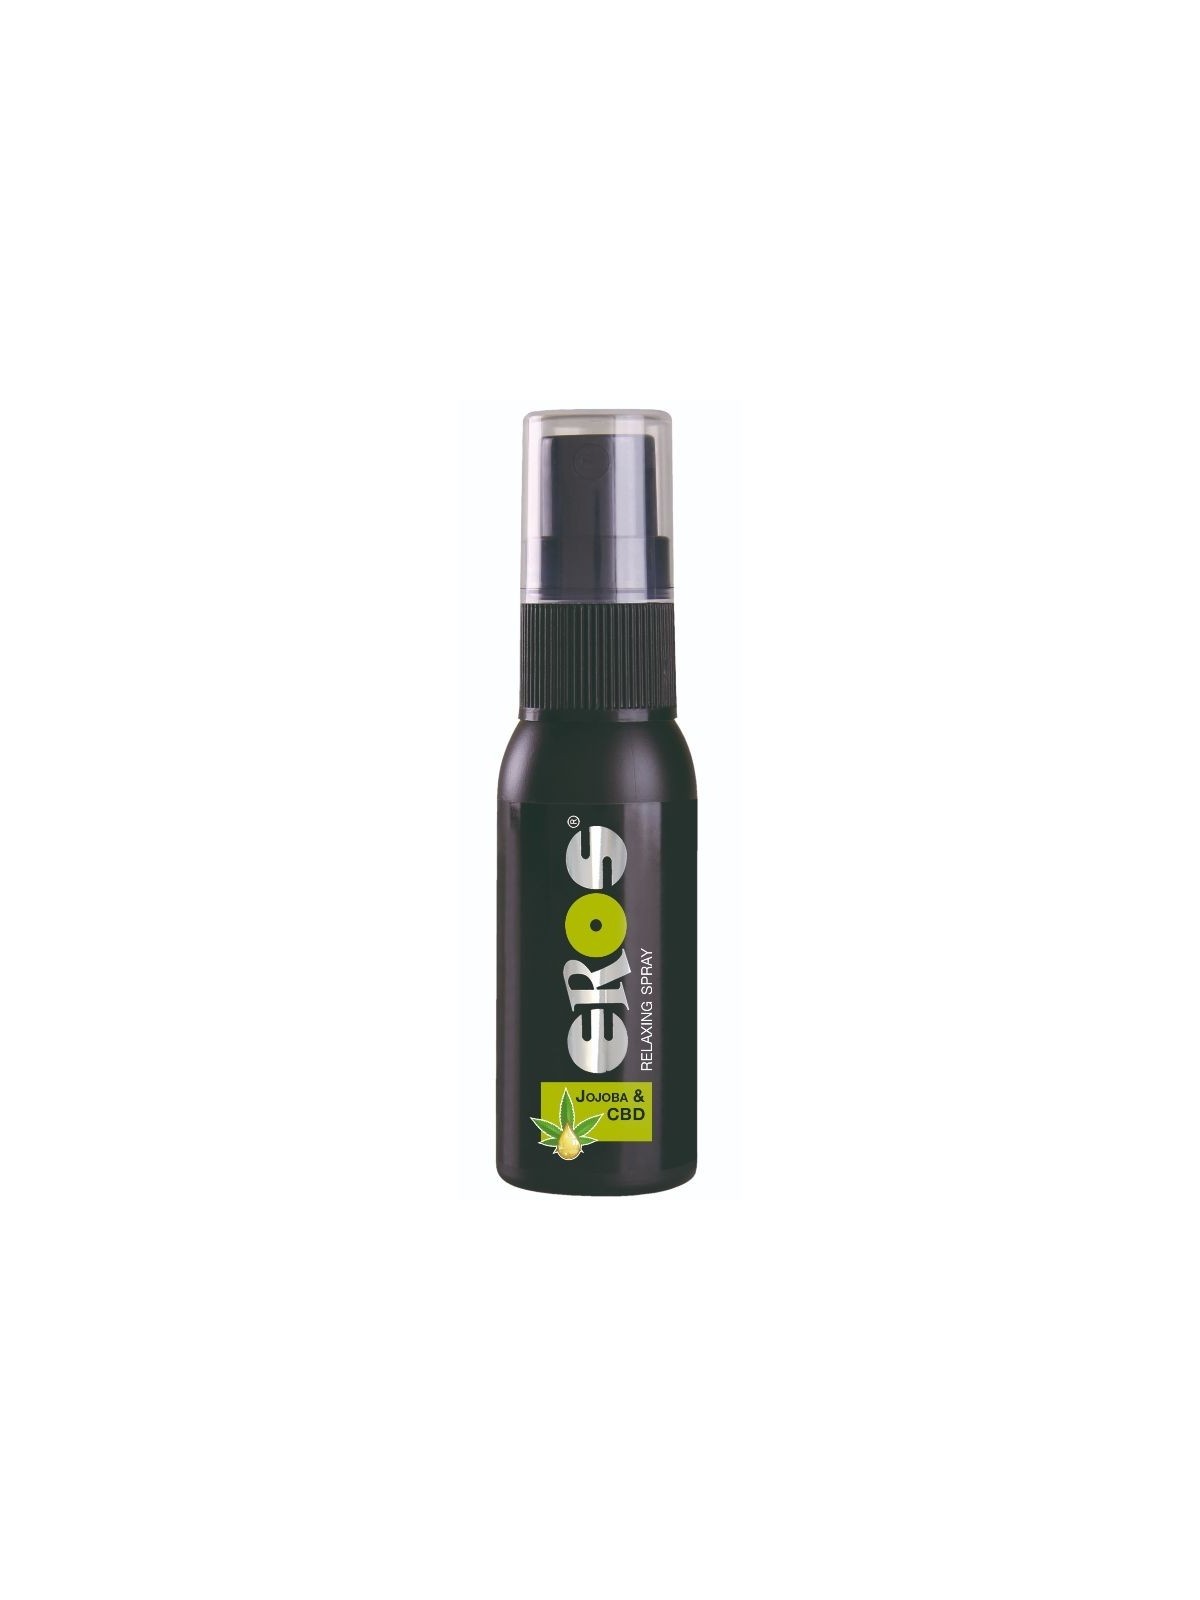 Eros Spray Retardante Con Jojoba & CBD 30 ml - Comprar Gel aceite cannabis Eros - Retardantes (1)